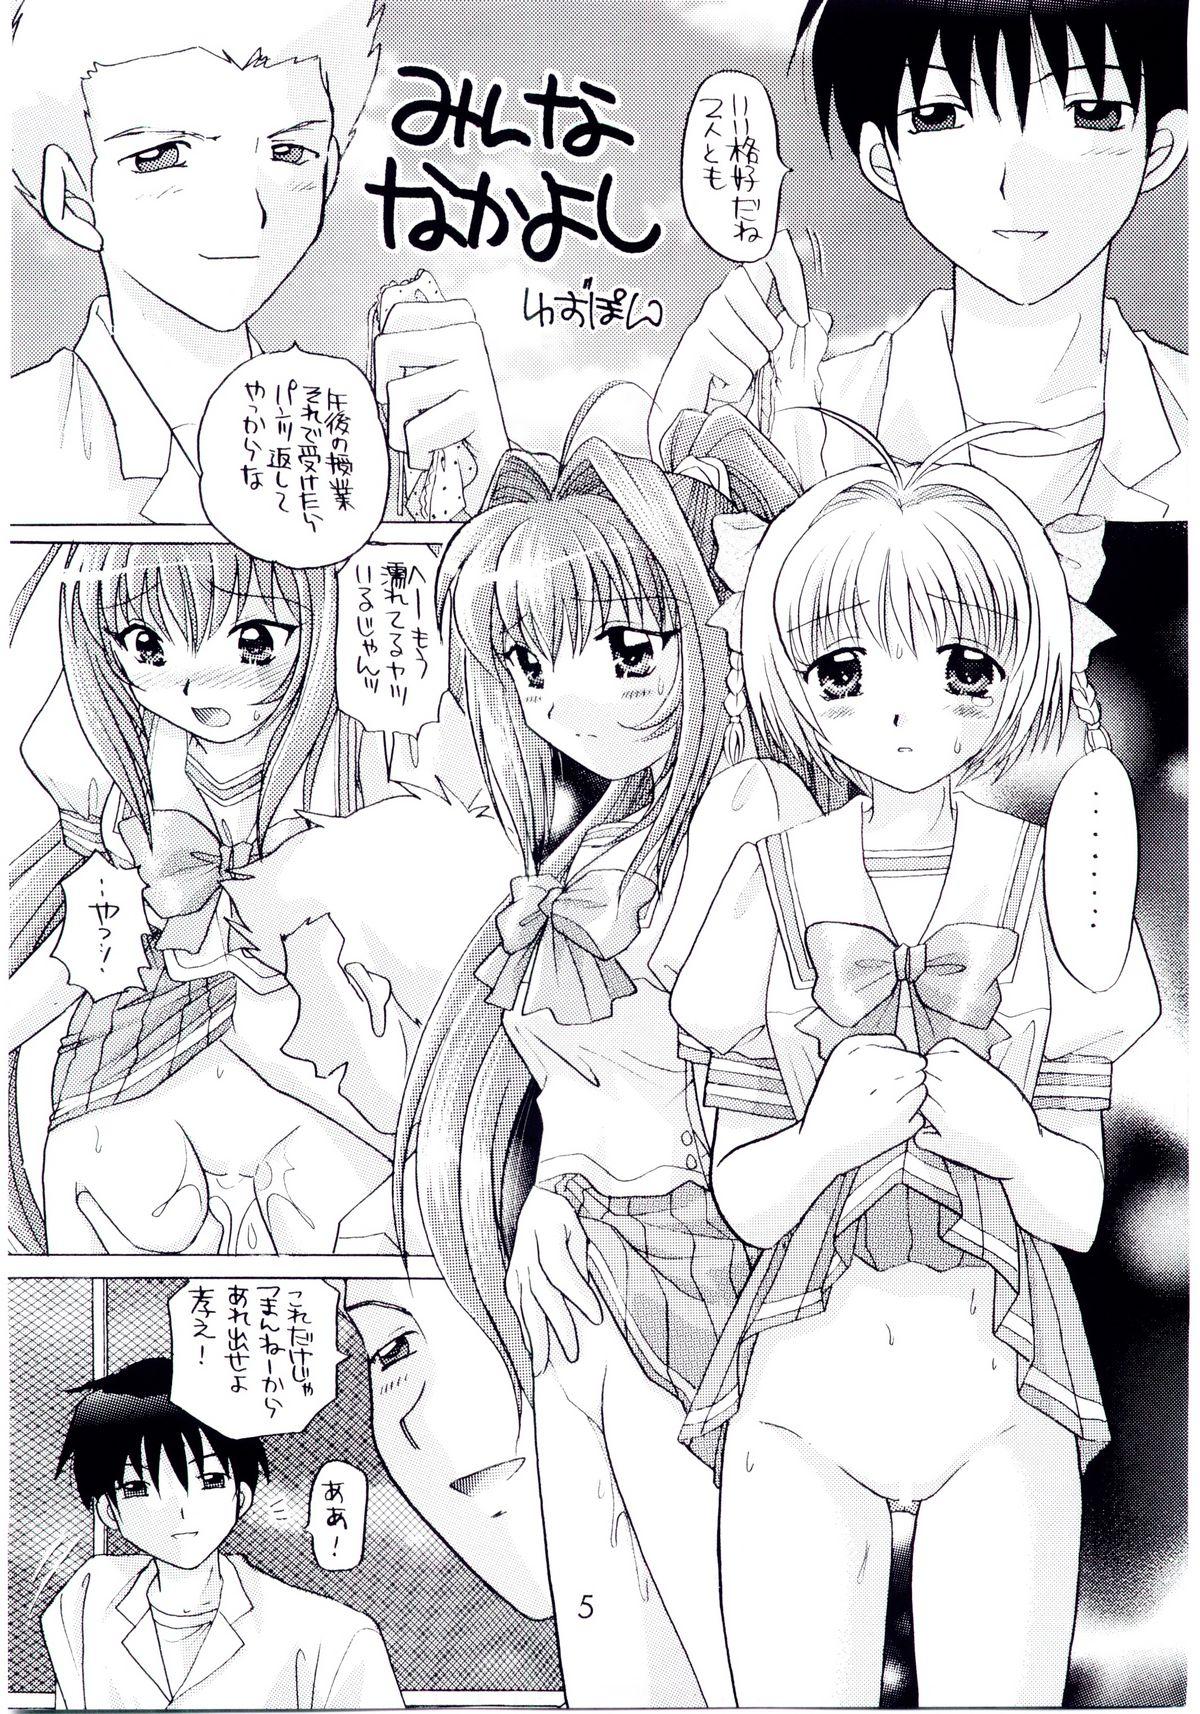 Eat Kimi ga nozomu eien zettai zetsumei 2 - Kimi ga nozomu eien Gay Kissing - Page 4